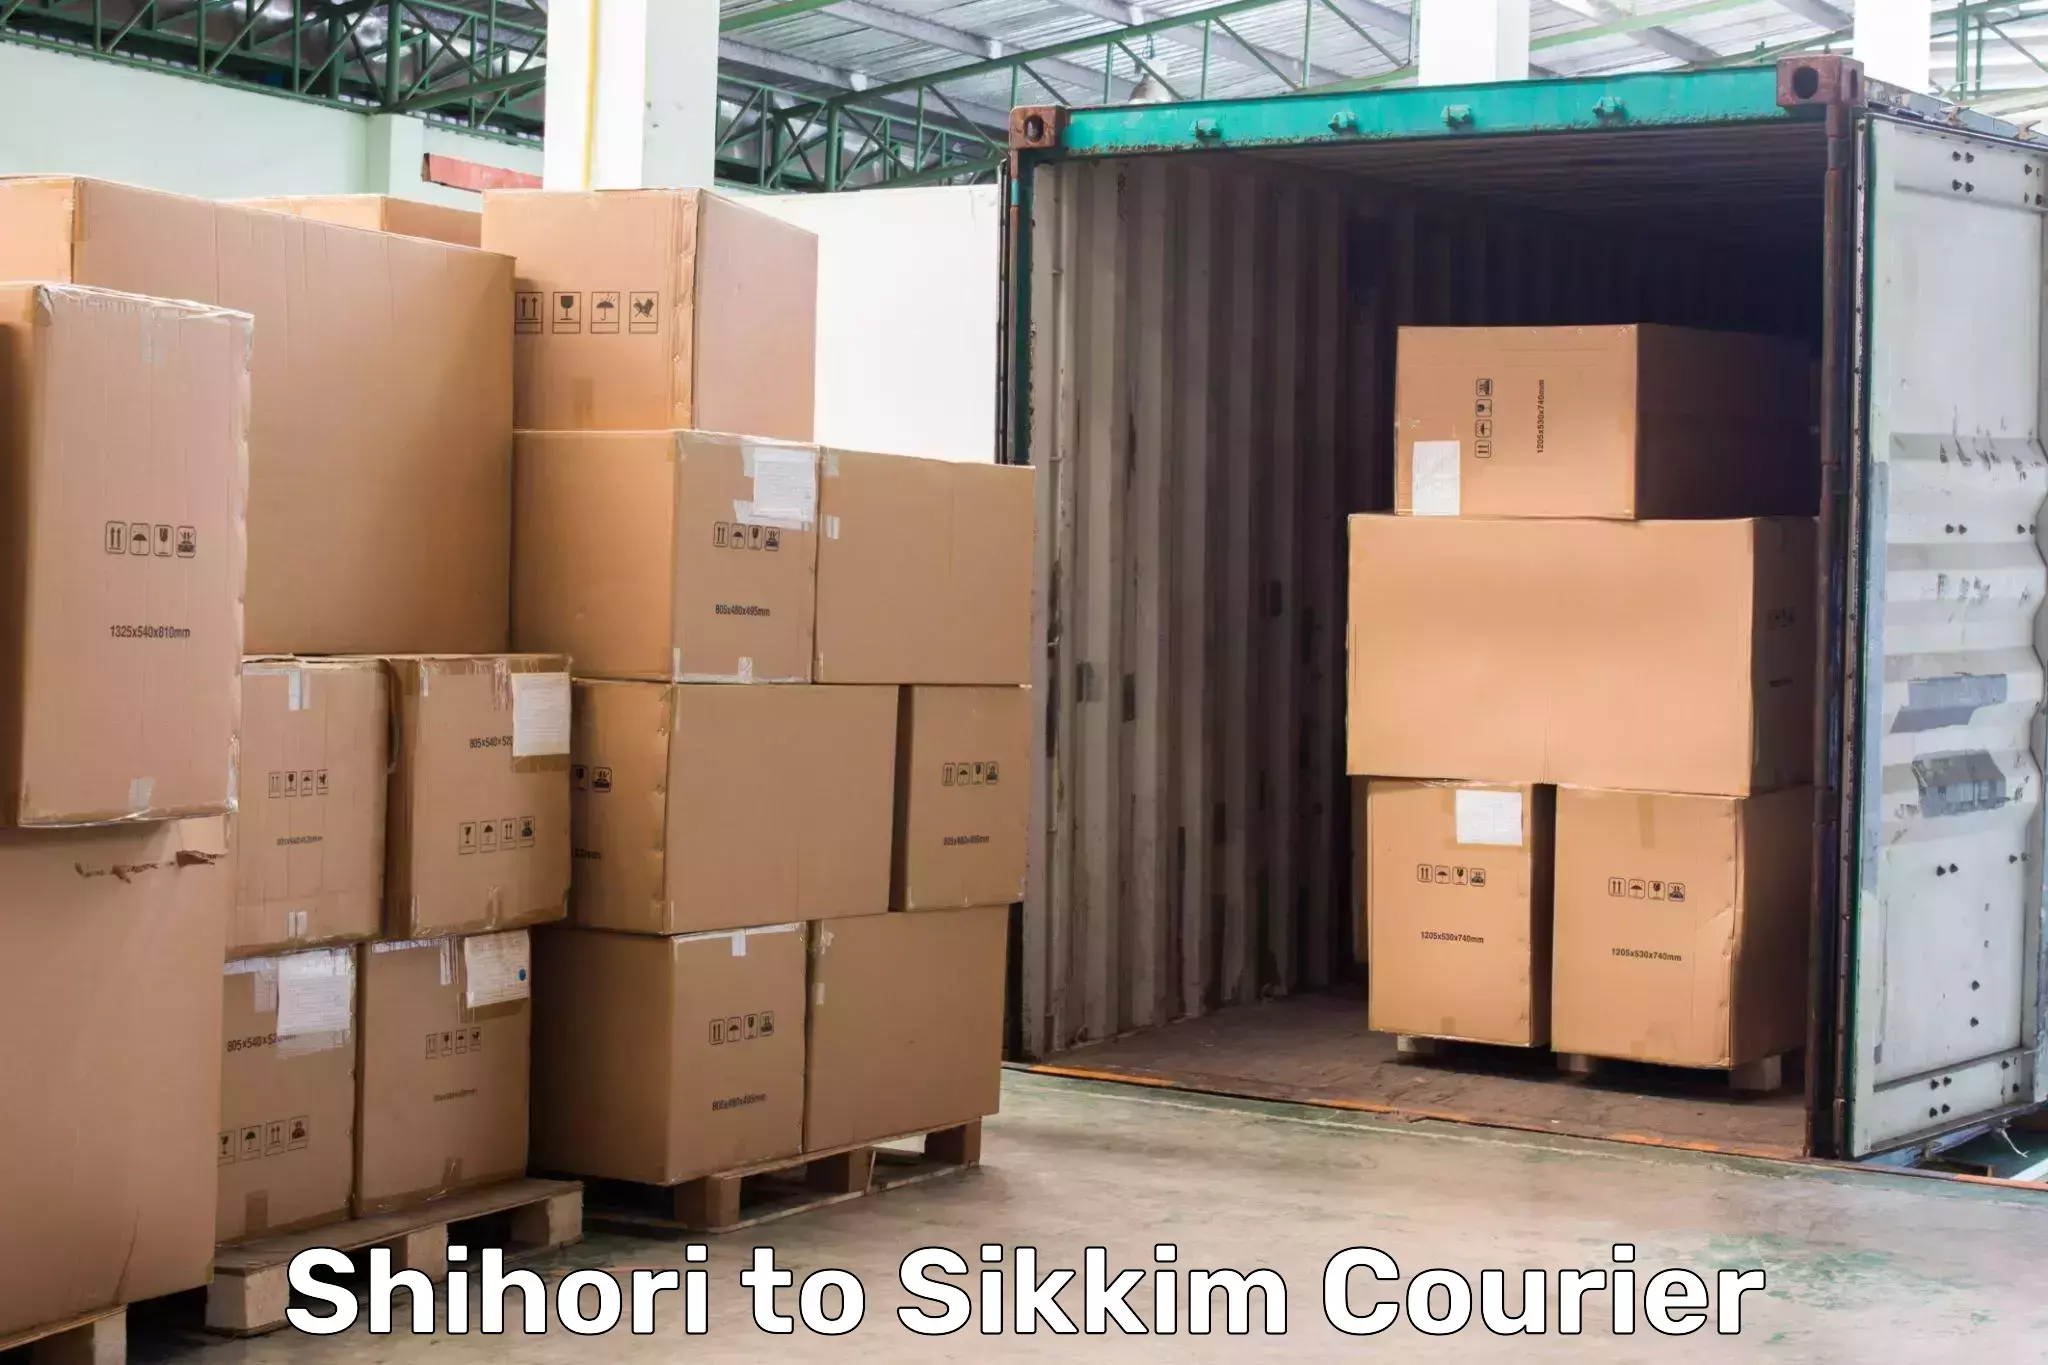 24-hour courier service Shihori to Gangtok